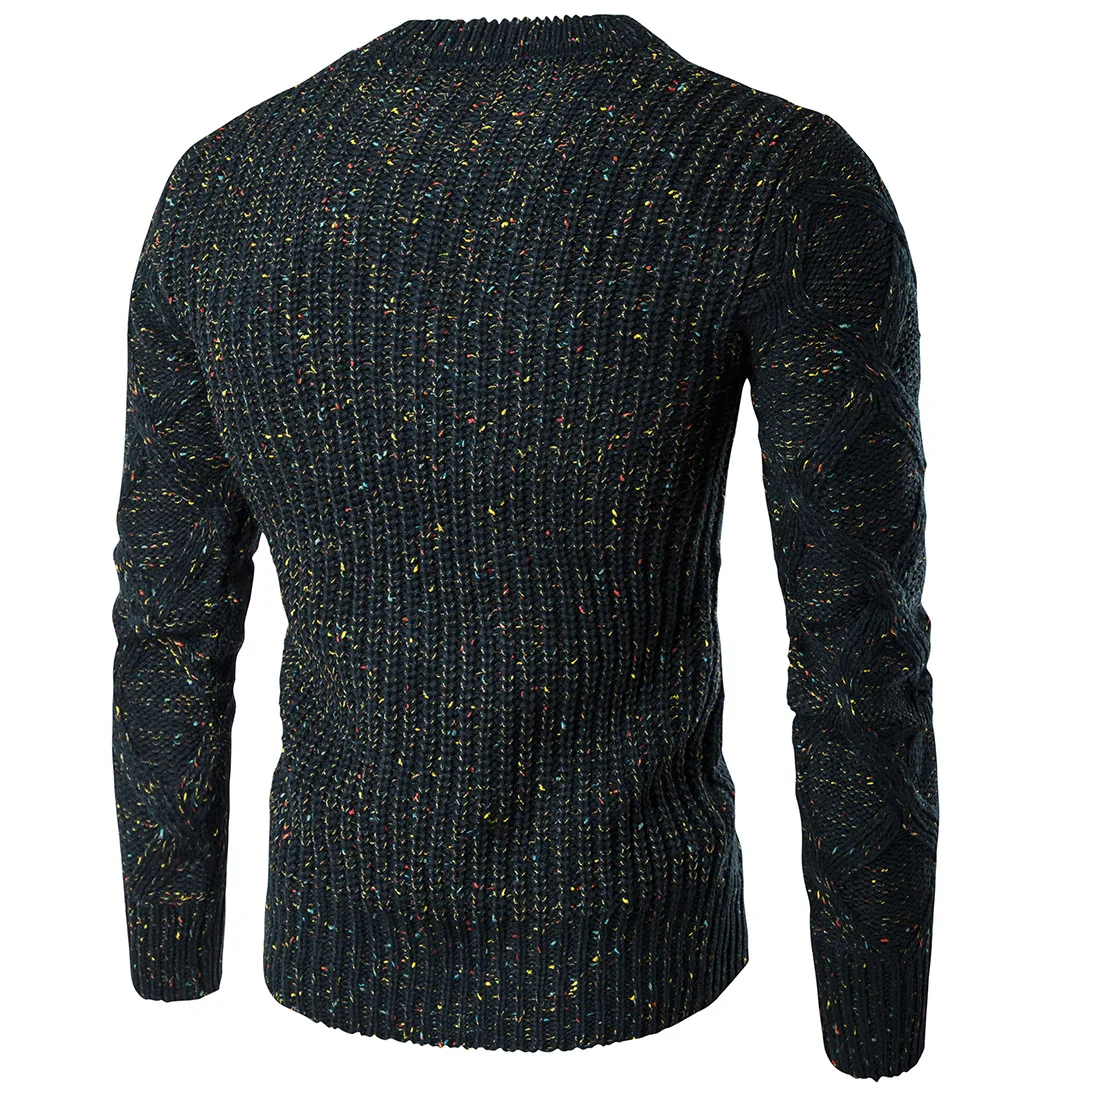 Пуловер мужской Новый ограниченный с круглым вырезом Повседневные пуловеры осень зима 2017 Мужской с толстым теплым свитером